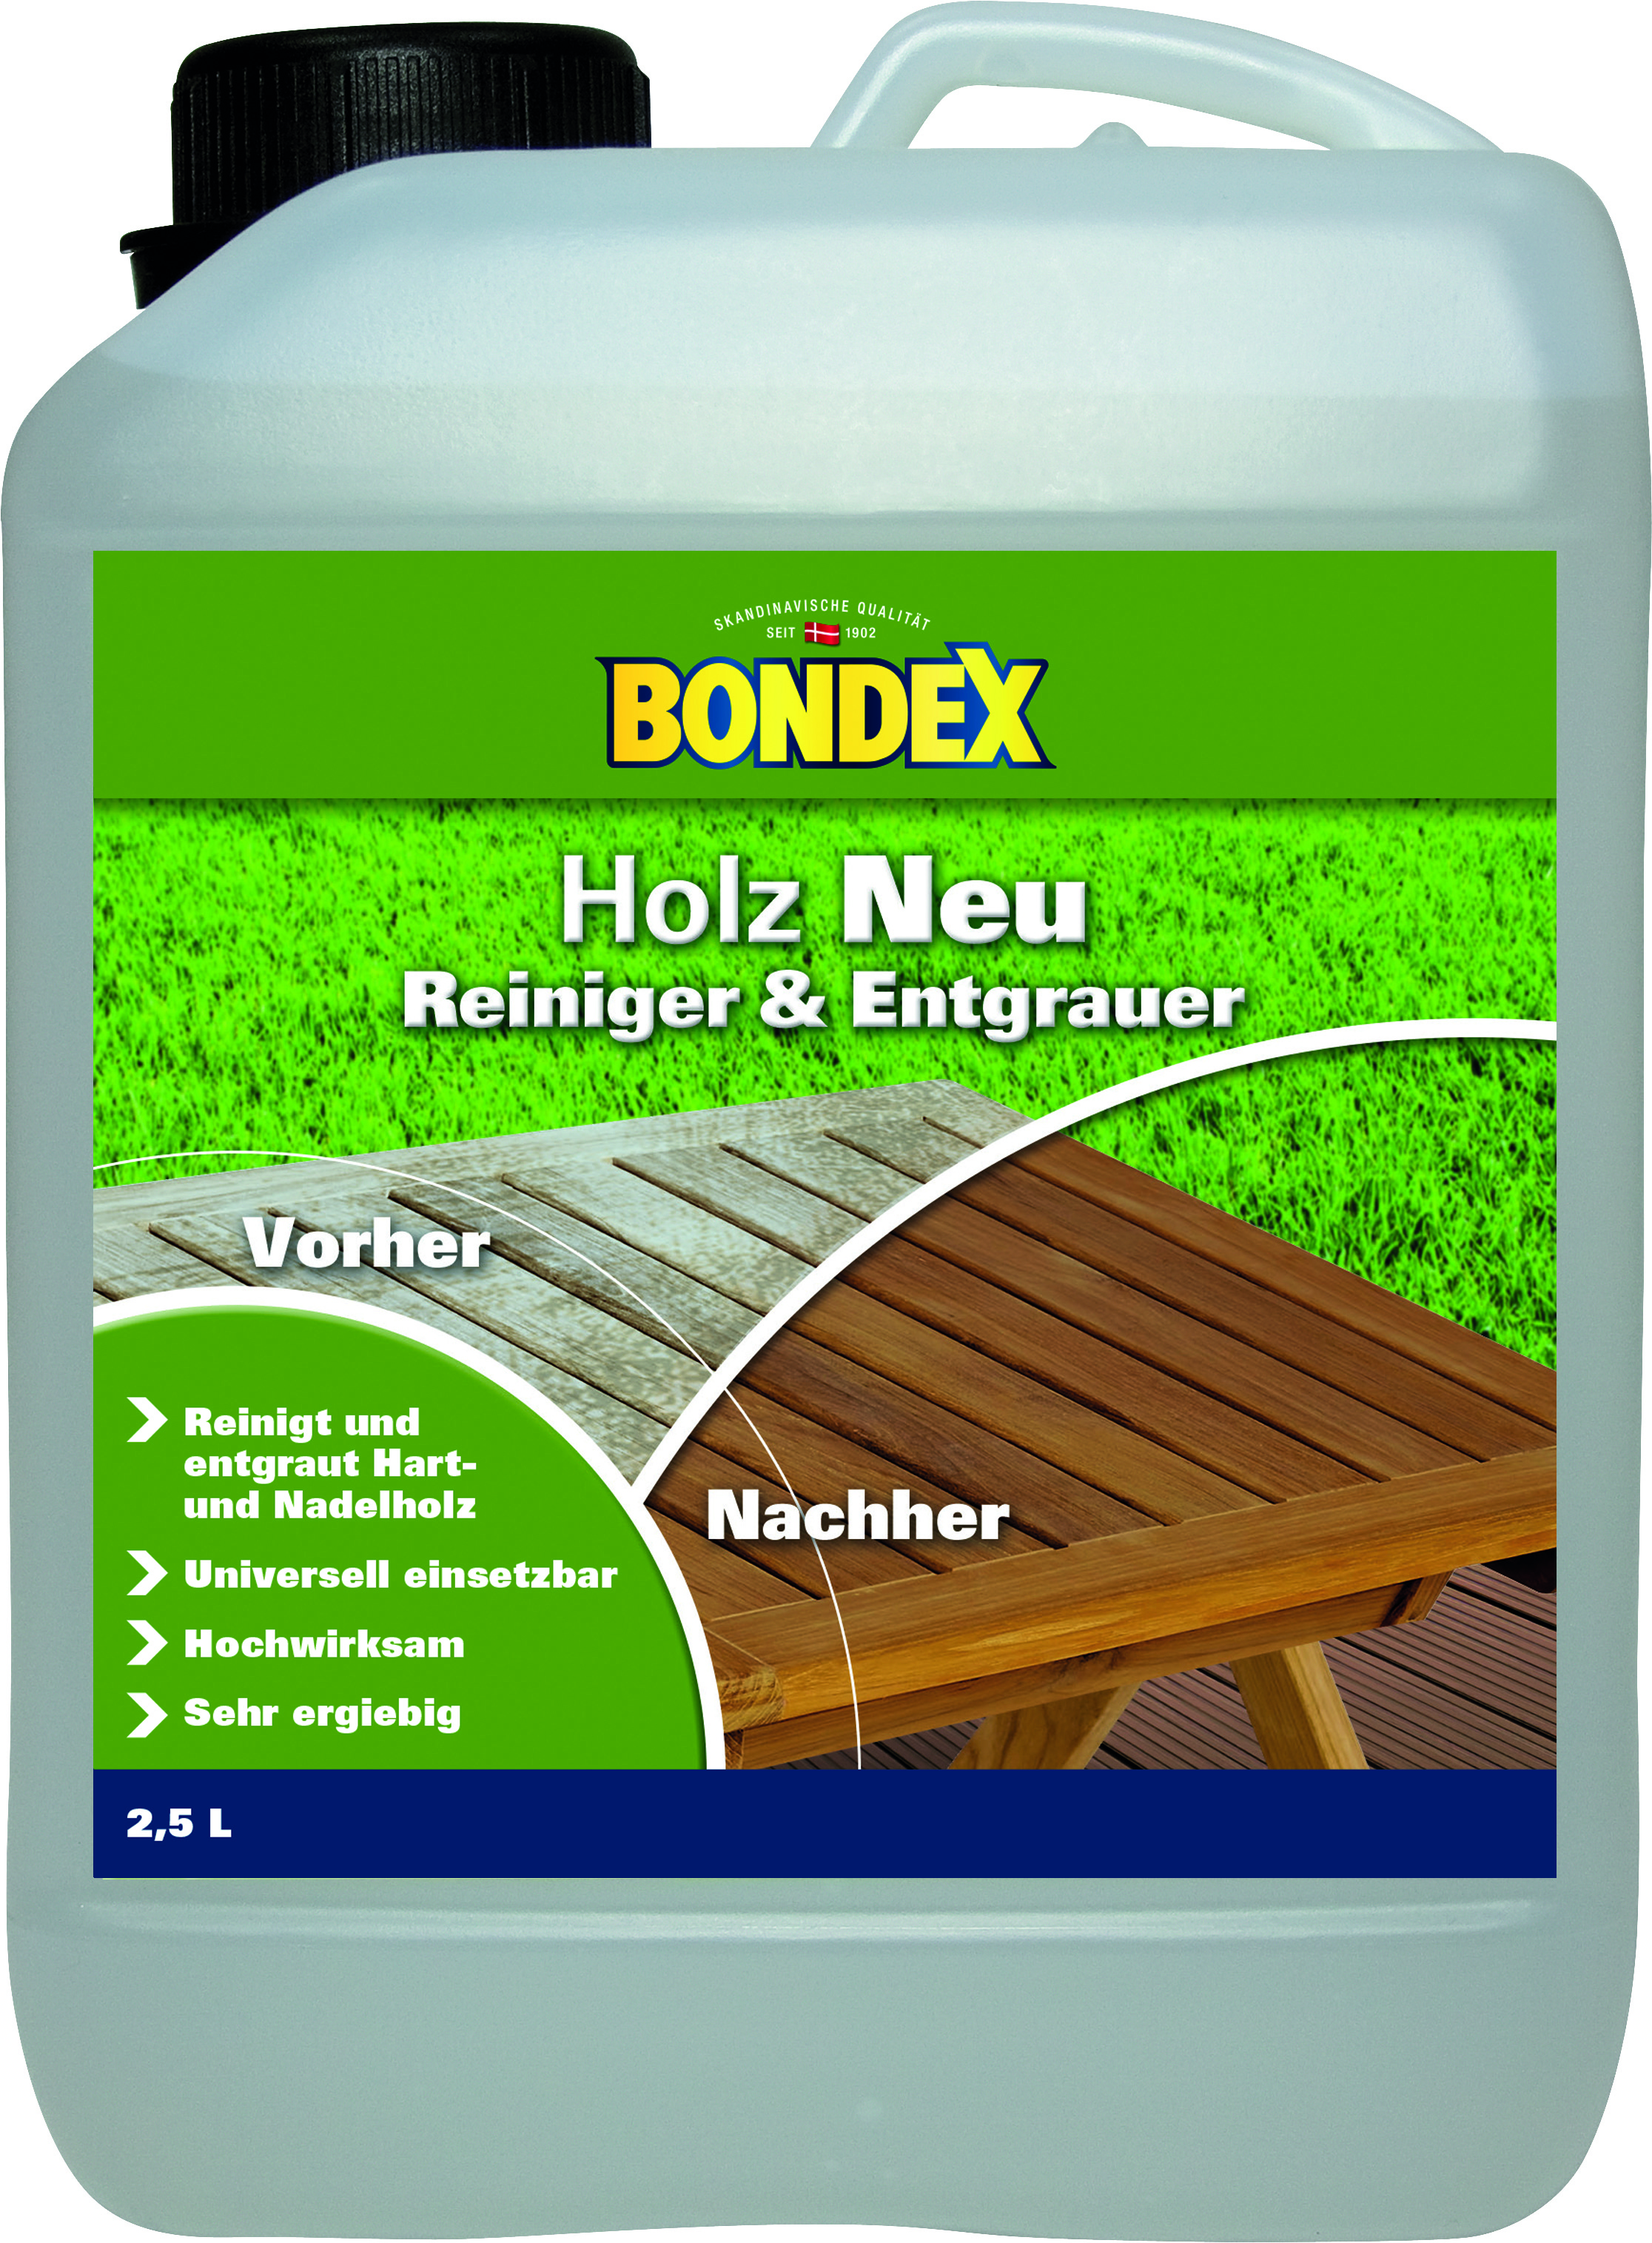 Bondex Holz Neu Reiniger & Entgrauer, 2,5L